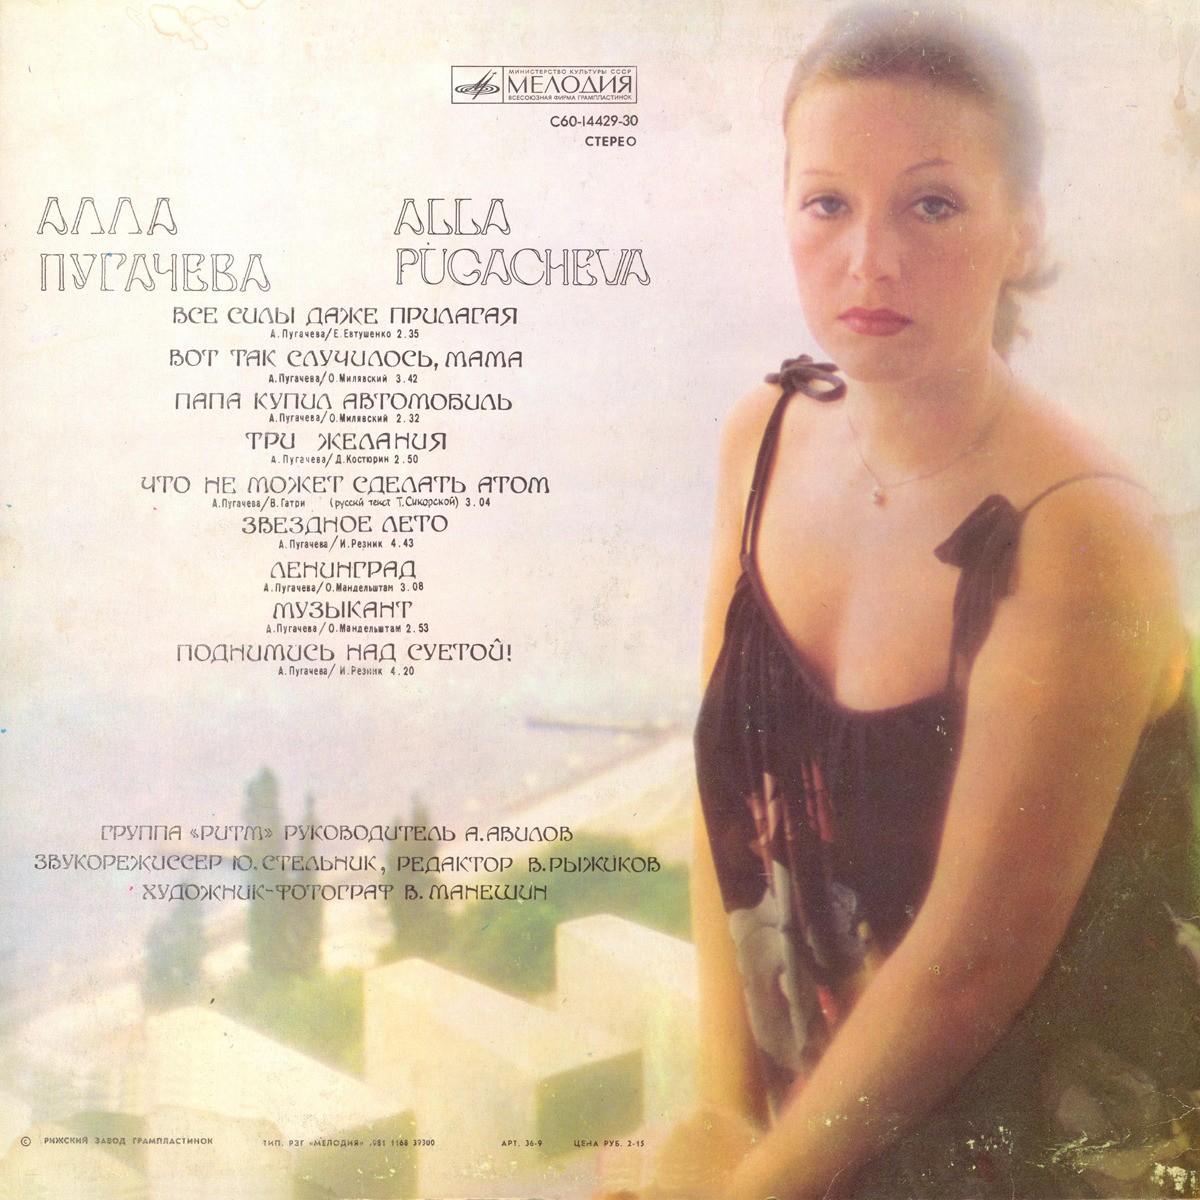 Alla Pugacheva, album "Soulevez au-dessus de la vanité !"